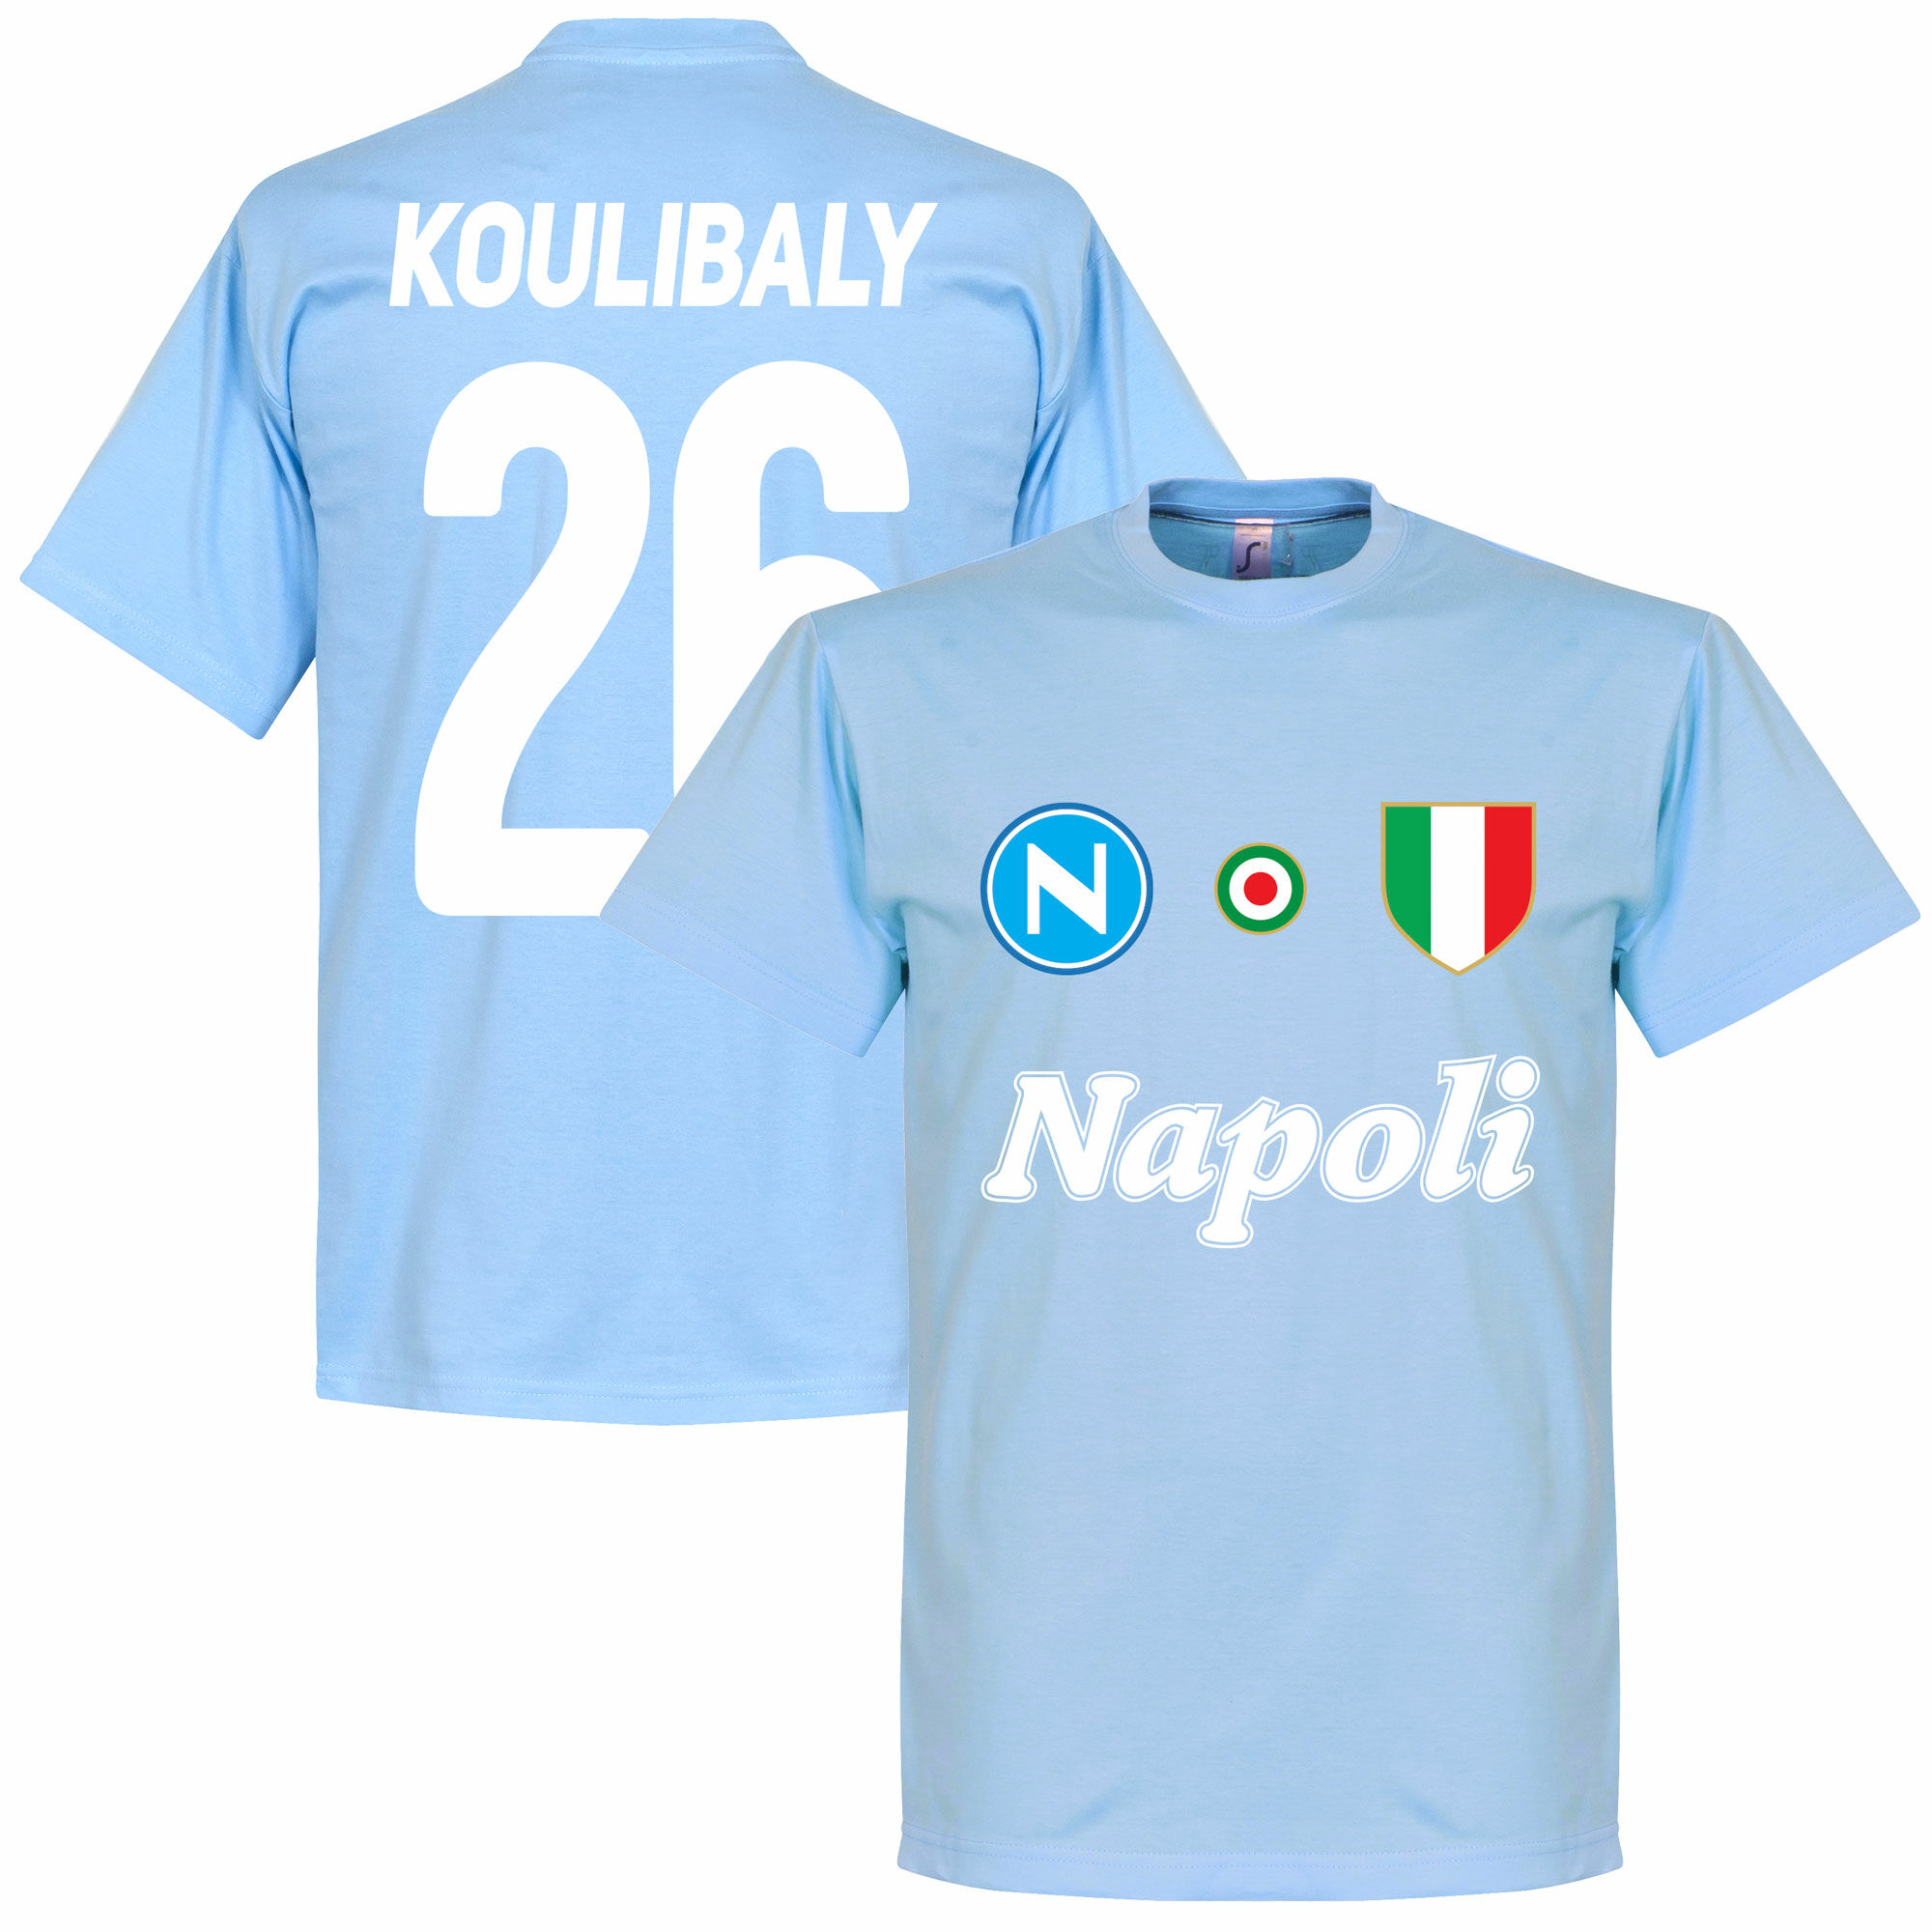 SSC Neapol - Tričko - Kalidou Koulibaly, číslo 26, modré